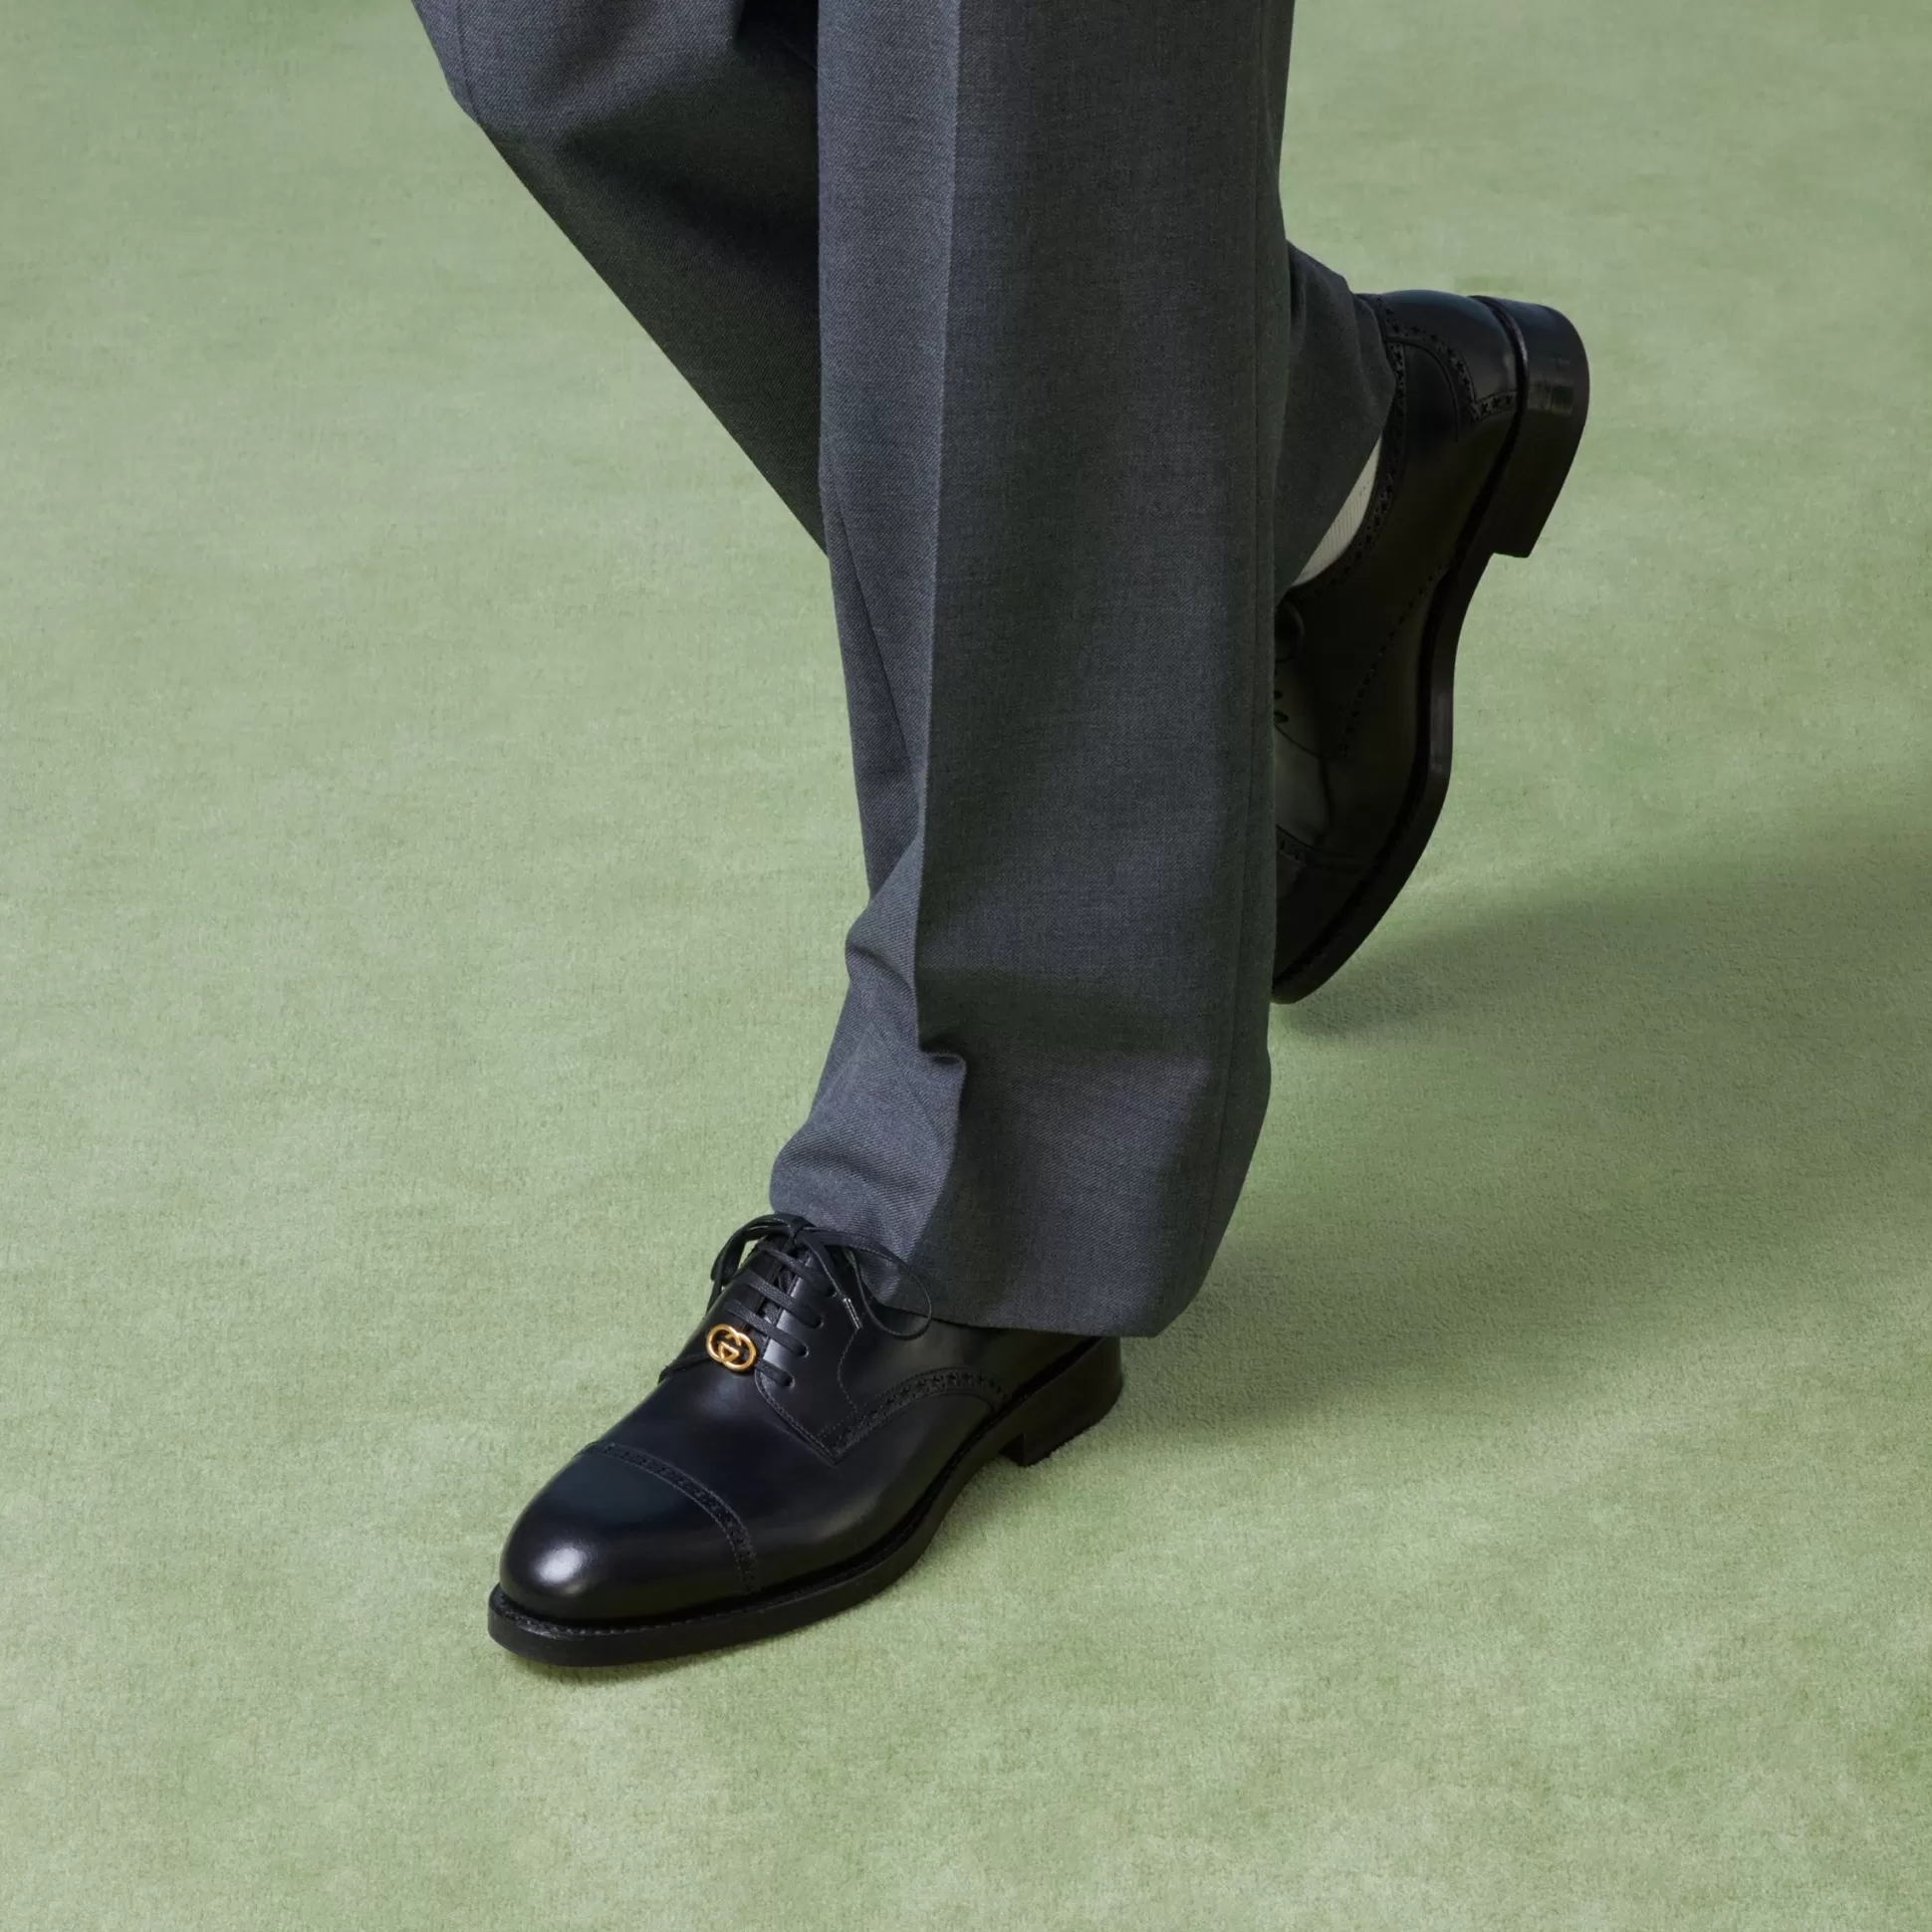 GUCCI Men'S Lace-Up Shoe With Brogue Details-Men Dress Shoes